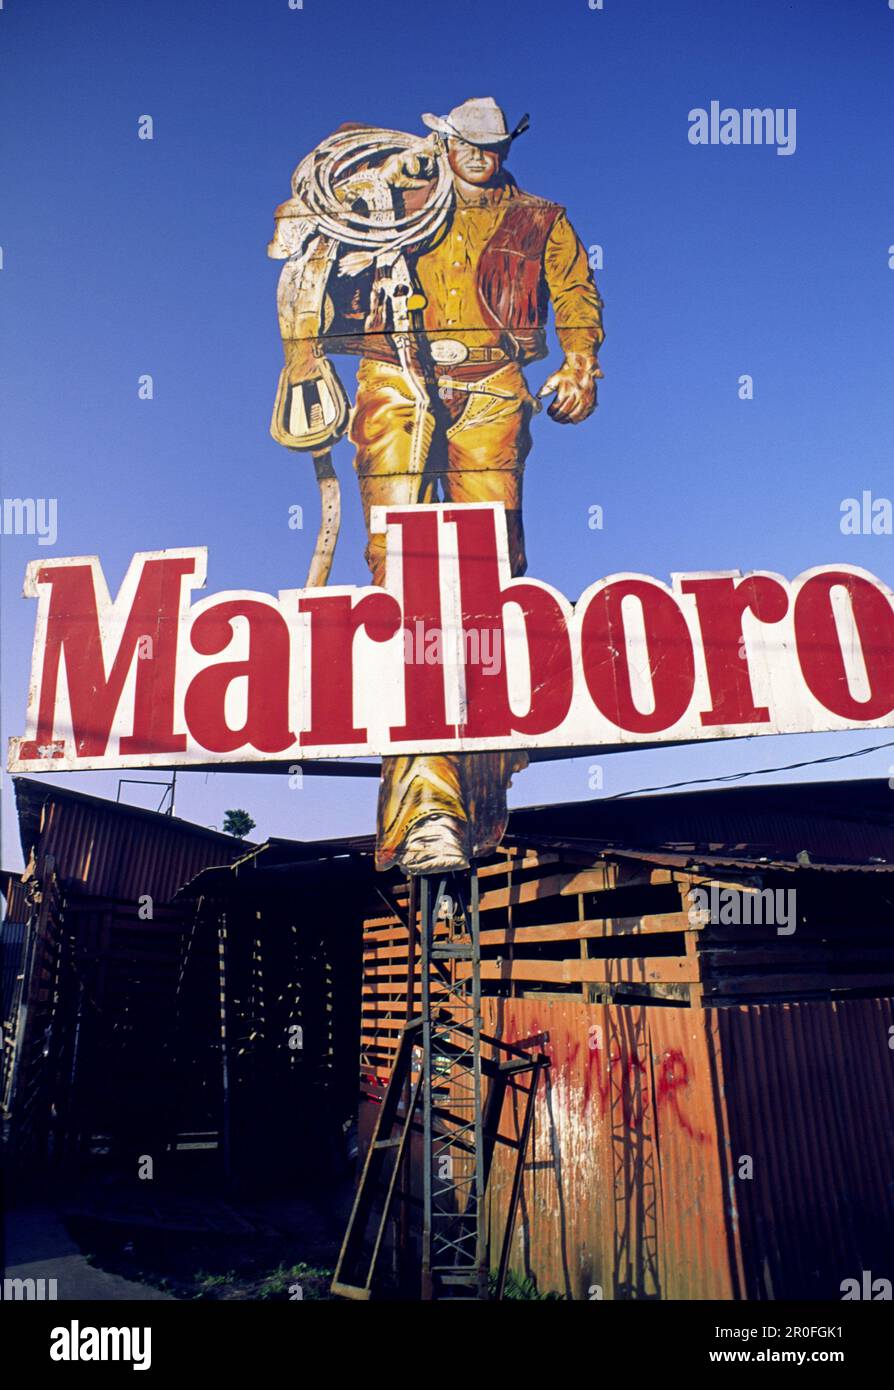 Costa Rica, Marlboro Man, cigarette billboard Stock Photo